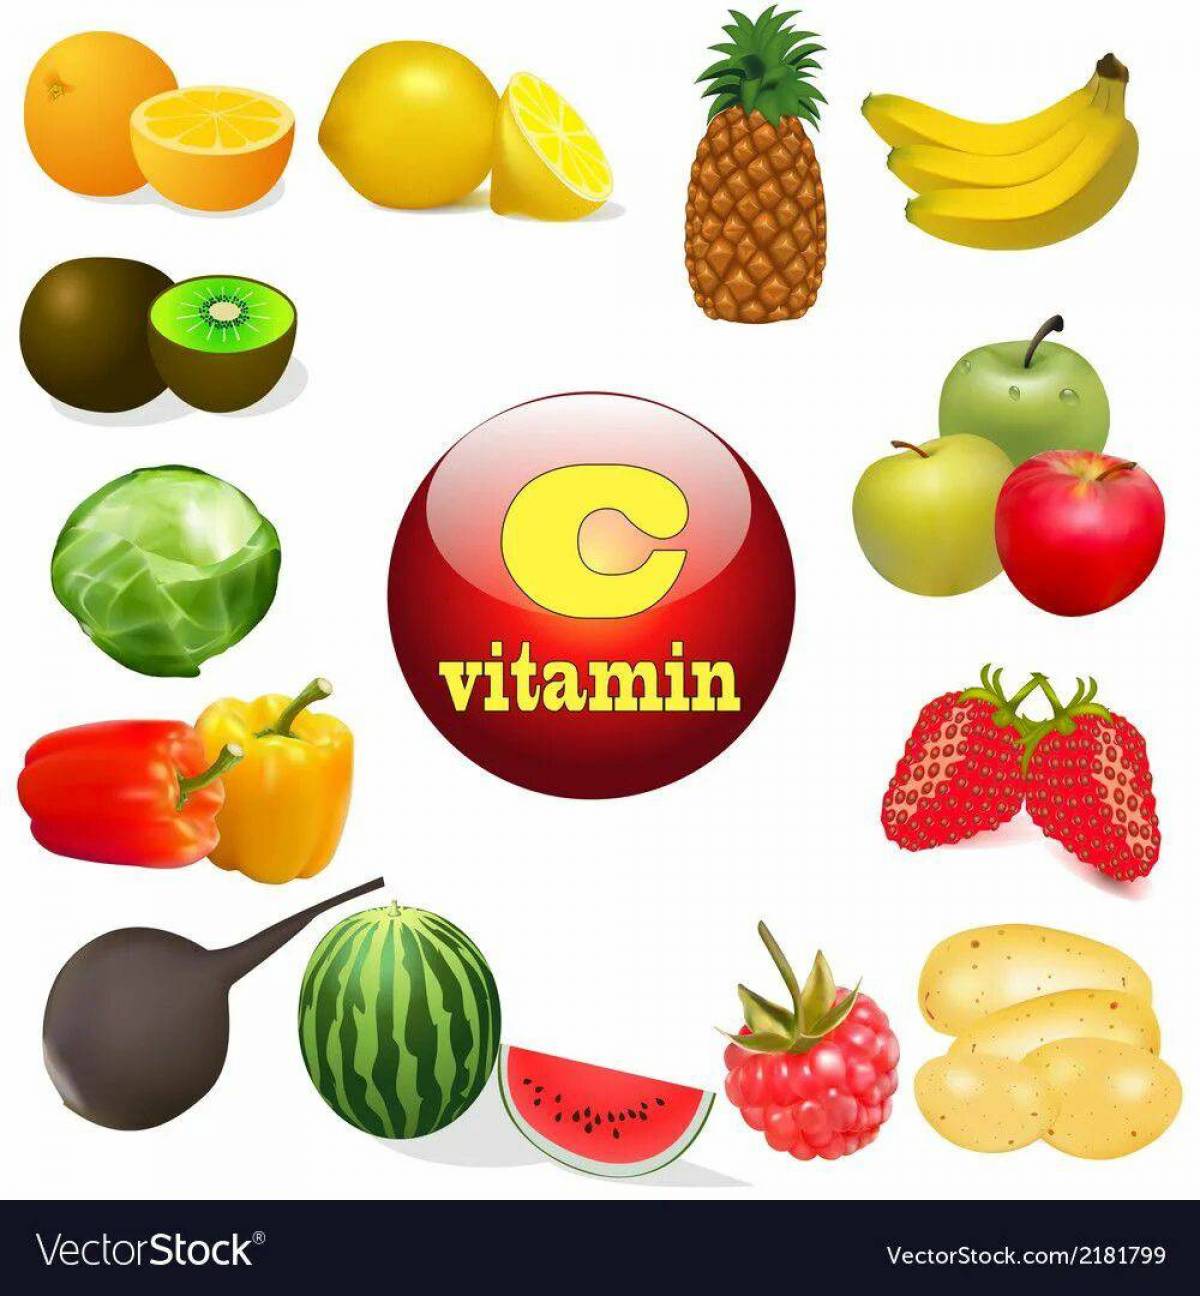 Витамины для детей в овощах и фруктах #8